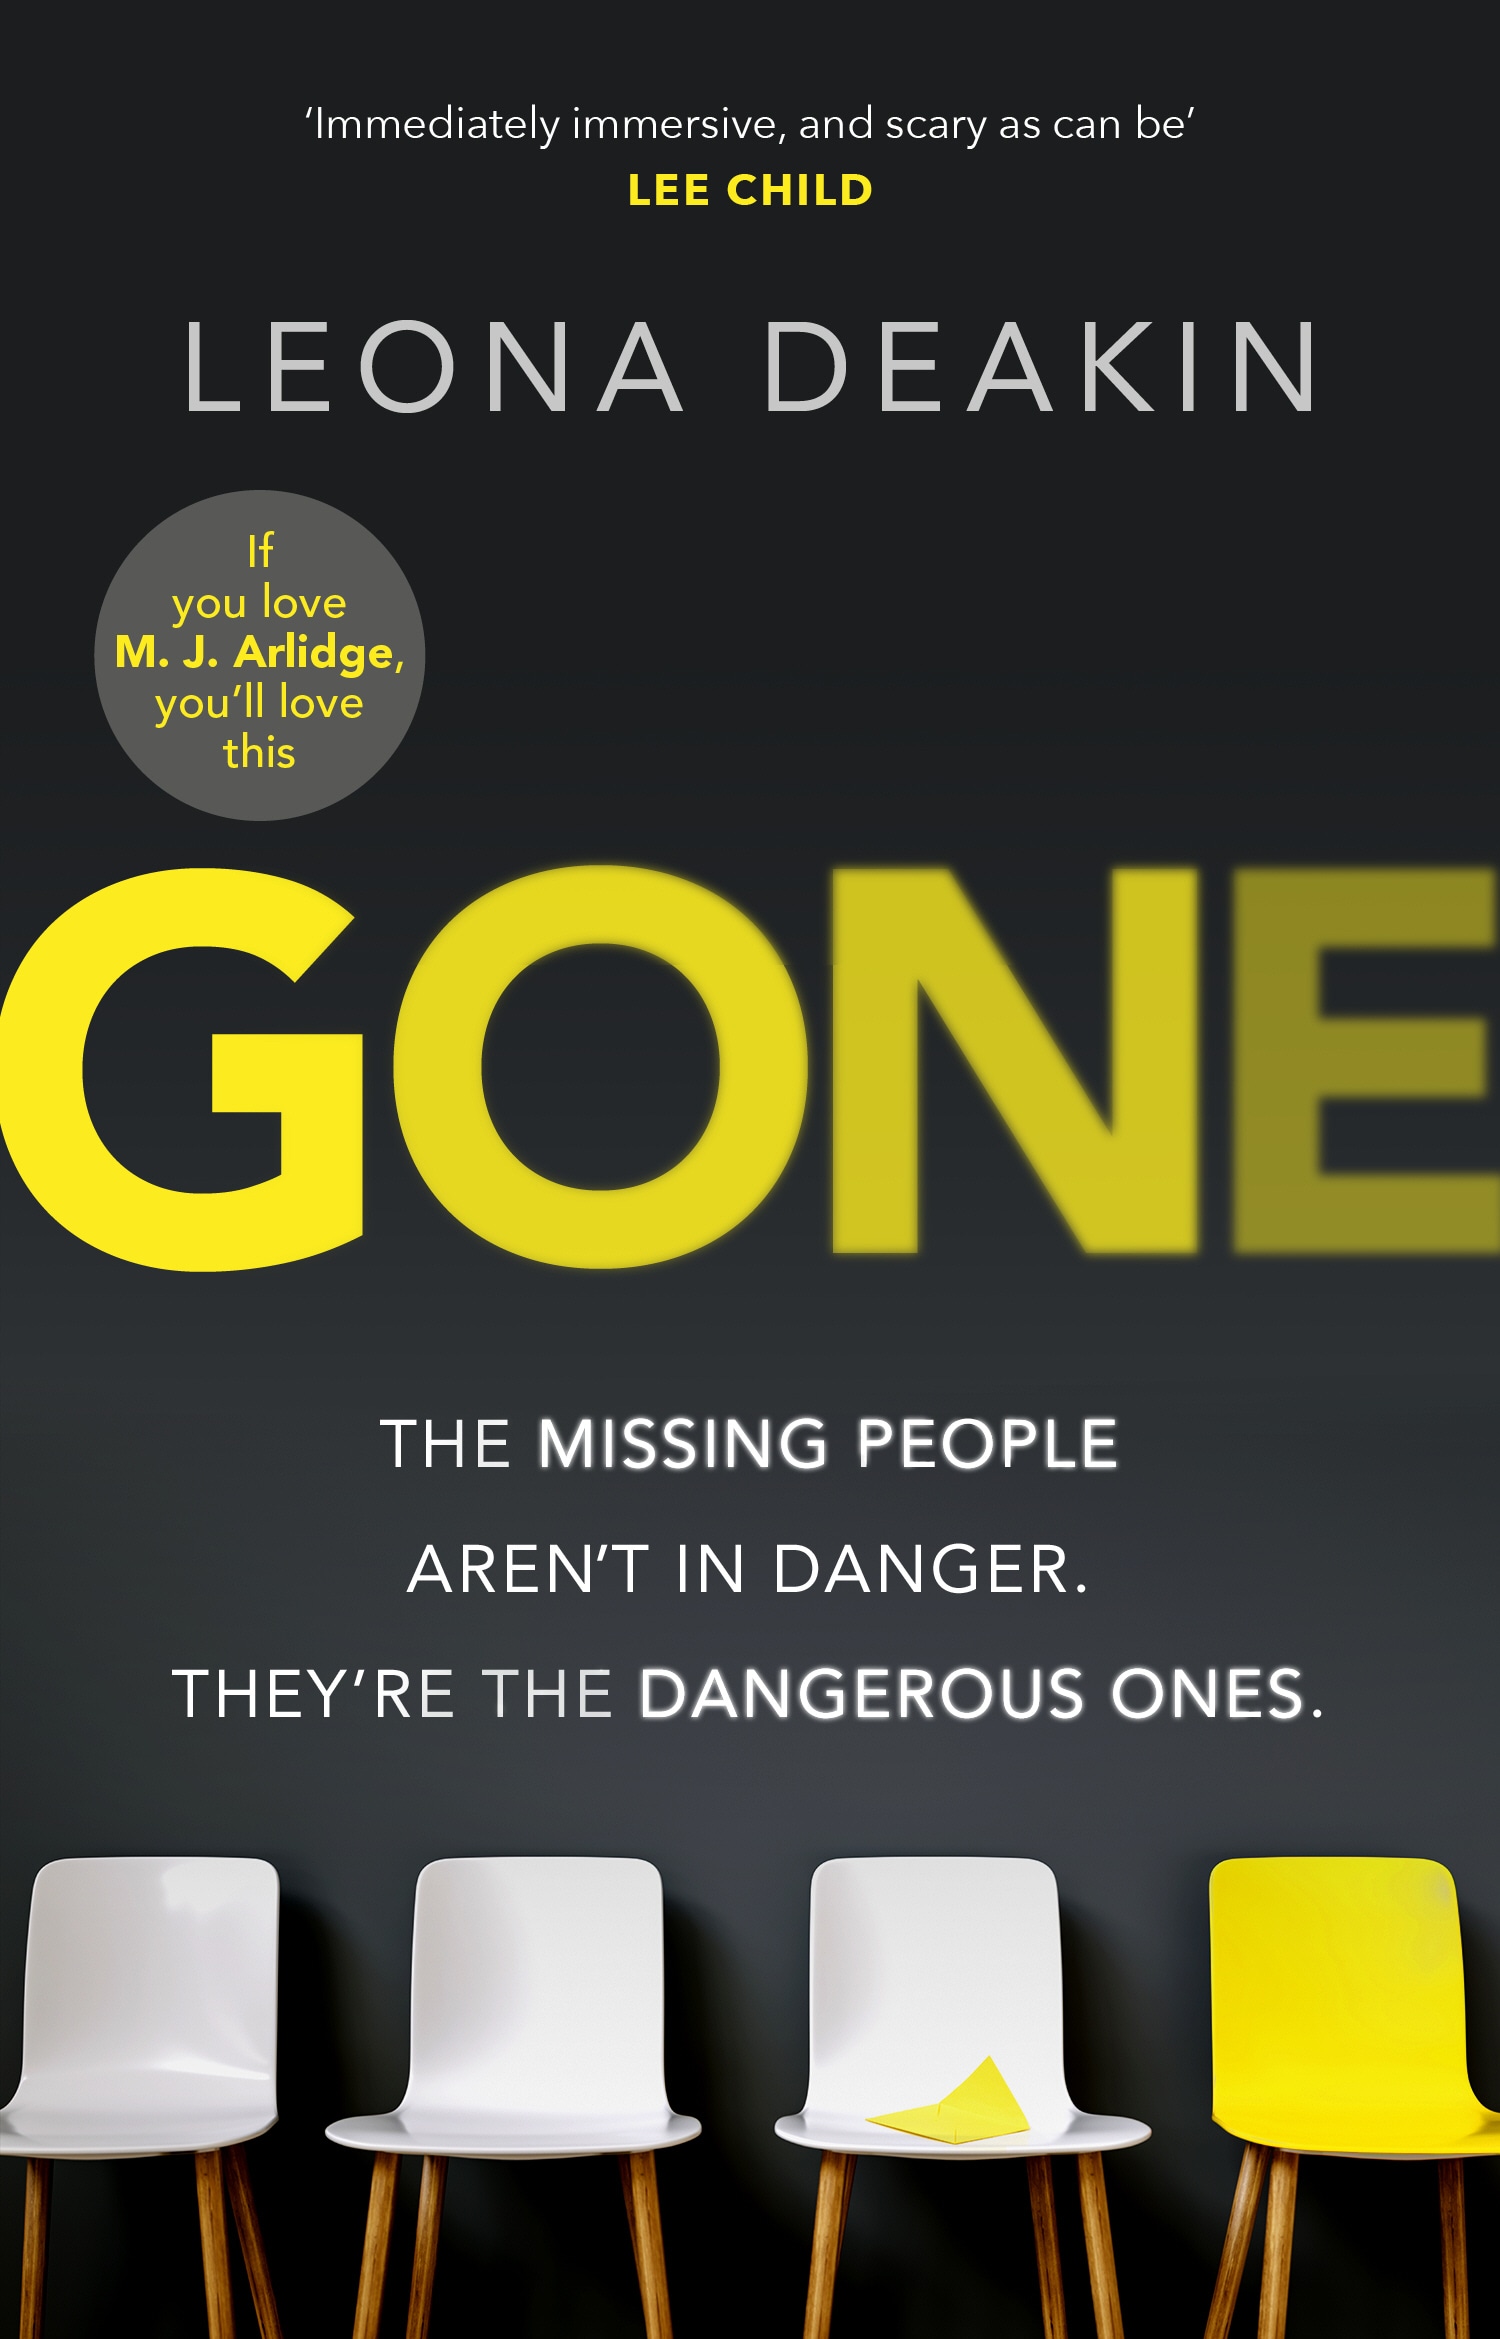 Book “Gone” by Leona Deakin — December 12, 2019